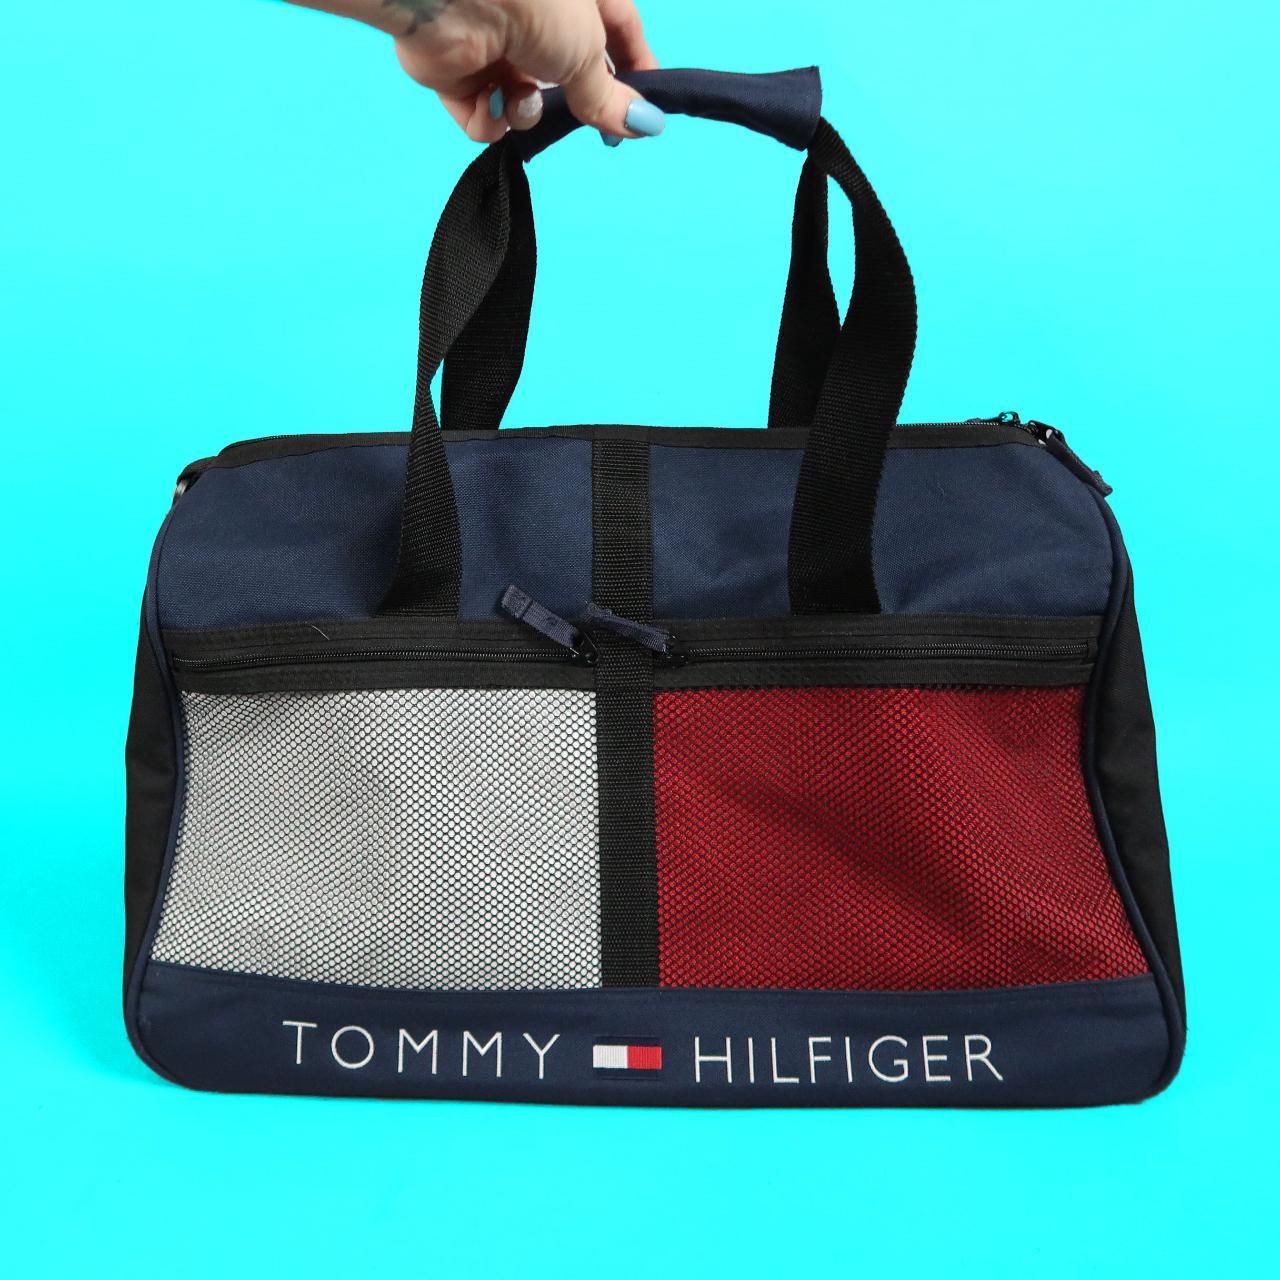 Tommy Hilfiger Men's Navy and Red Bag | Depop